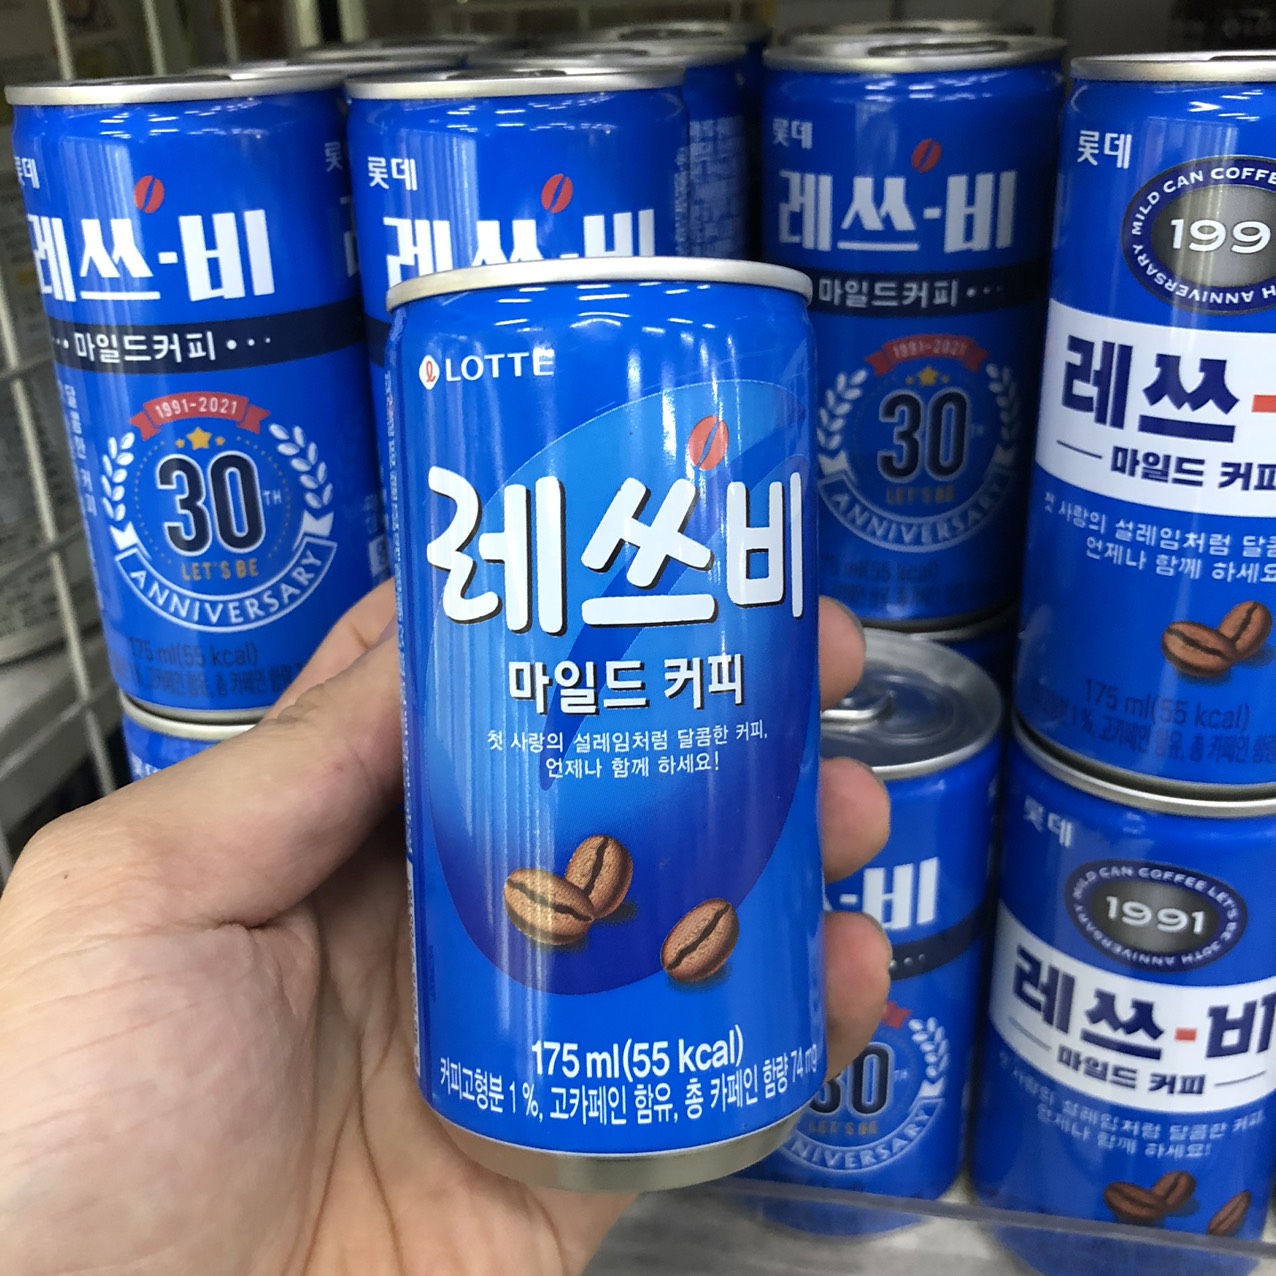 Cà Phê Uống Liền Let's Be Milk Lotte Hàn Quốc Lon 175ml